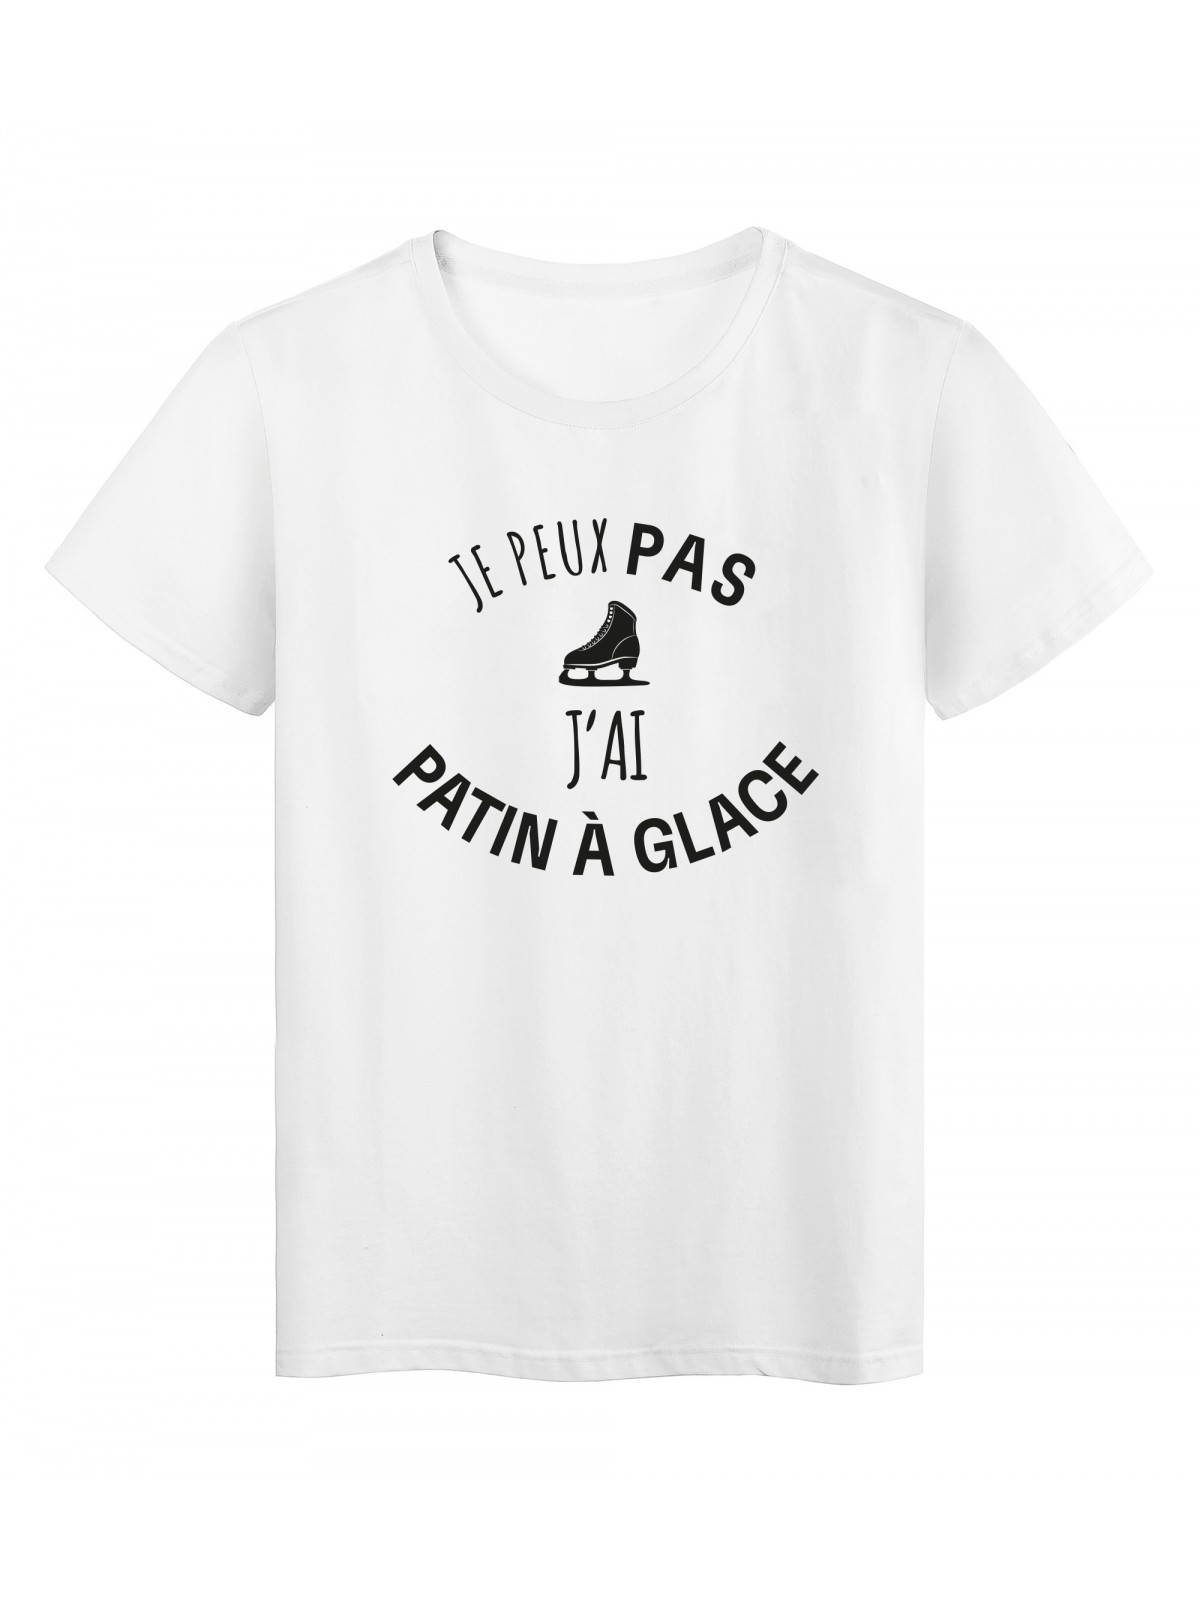 T-Shirt imprimÃ© citation humour je peux pas j'ai patin a glace